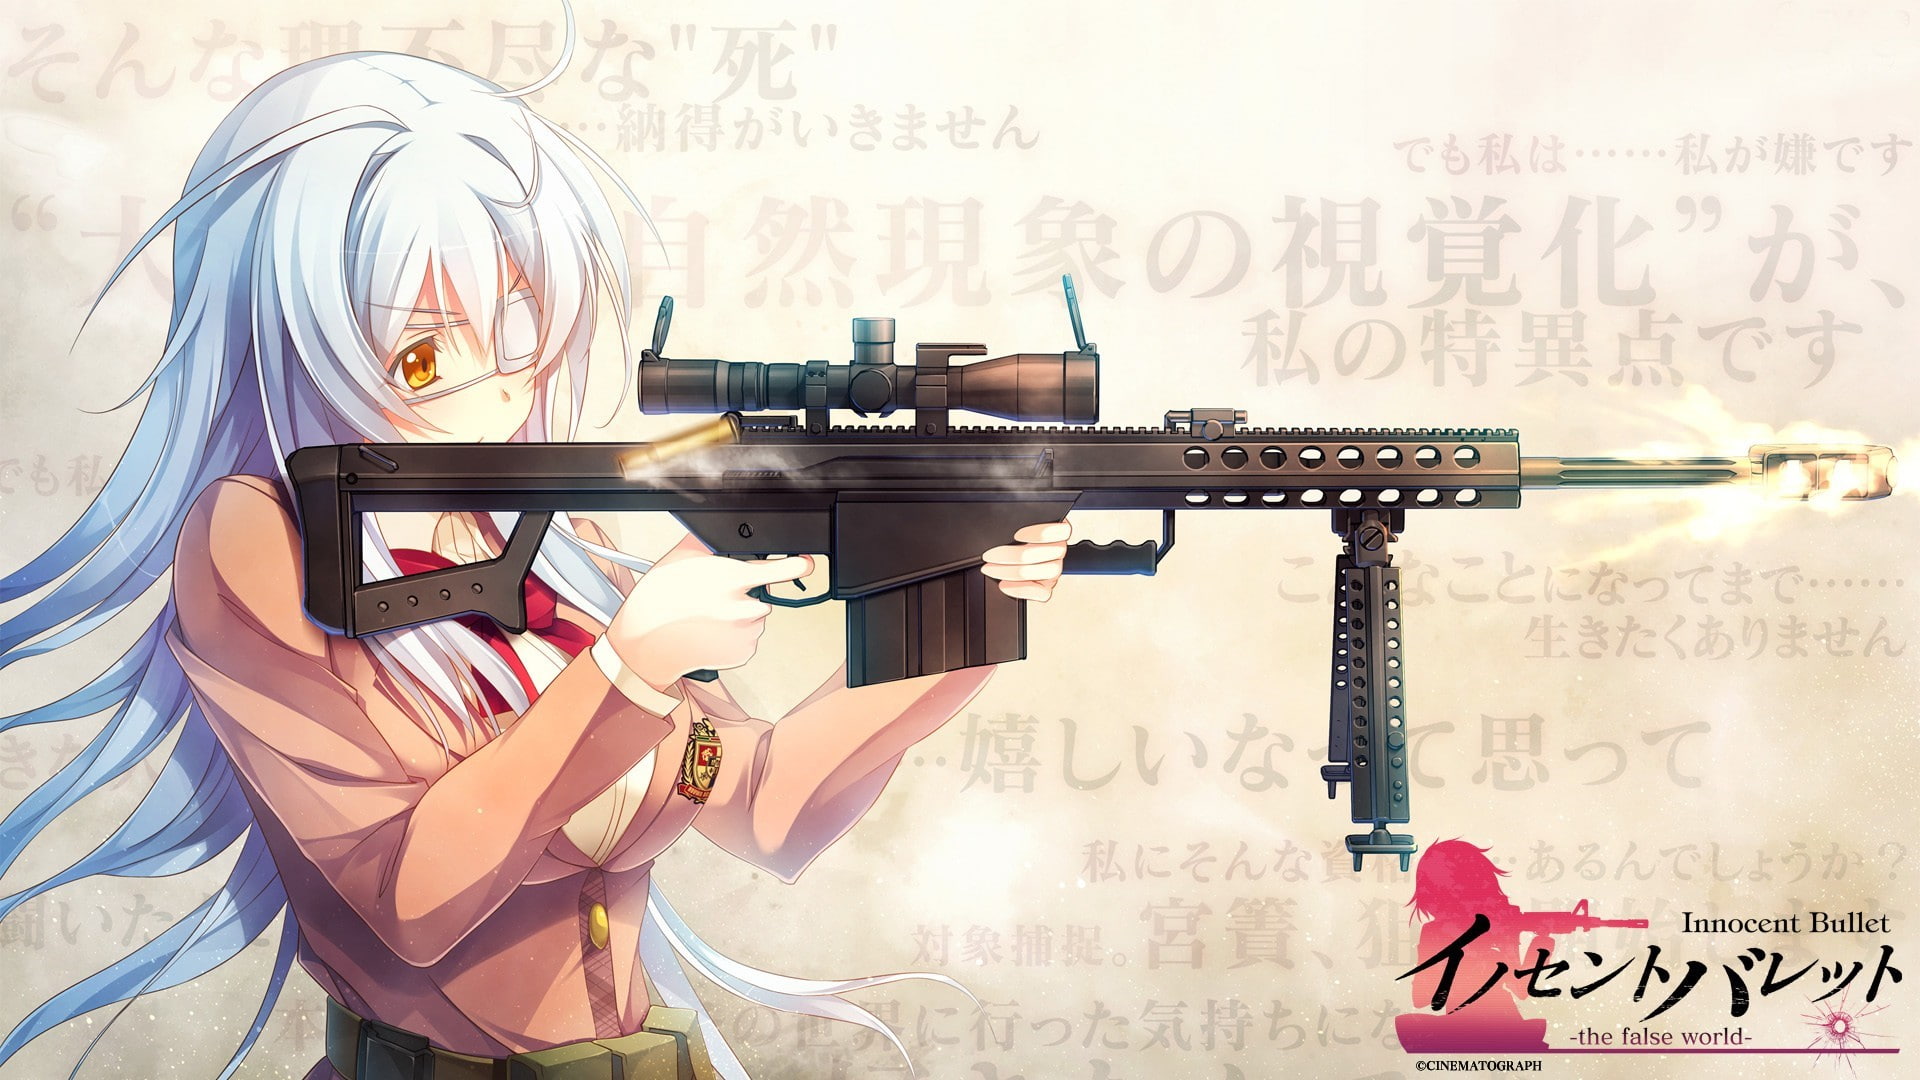 gun women anime anime girls eyepatches innocent bullet the false world sniper rifle barrett _50 cal